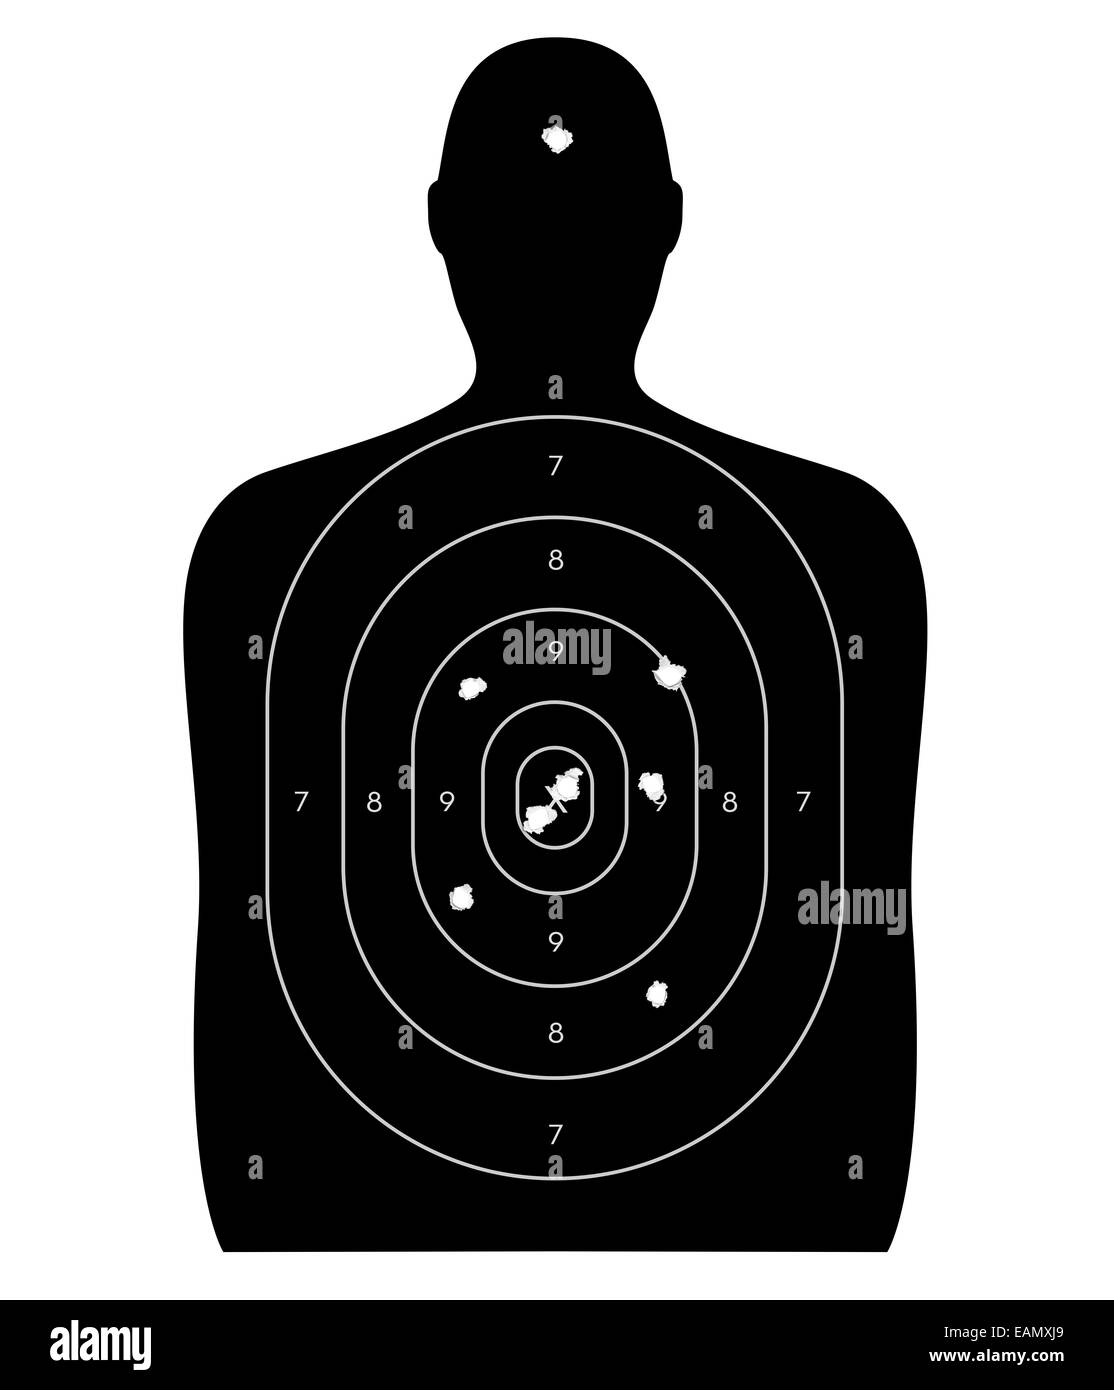 Cible de tir des armes à feu en forme d'un humain, avec des trous de balle dans l'oeil de boeuf et un tir. Isolé sur fond blanc Banque D'Images